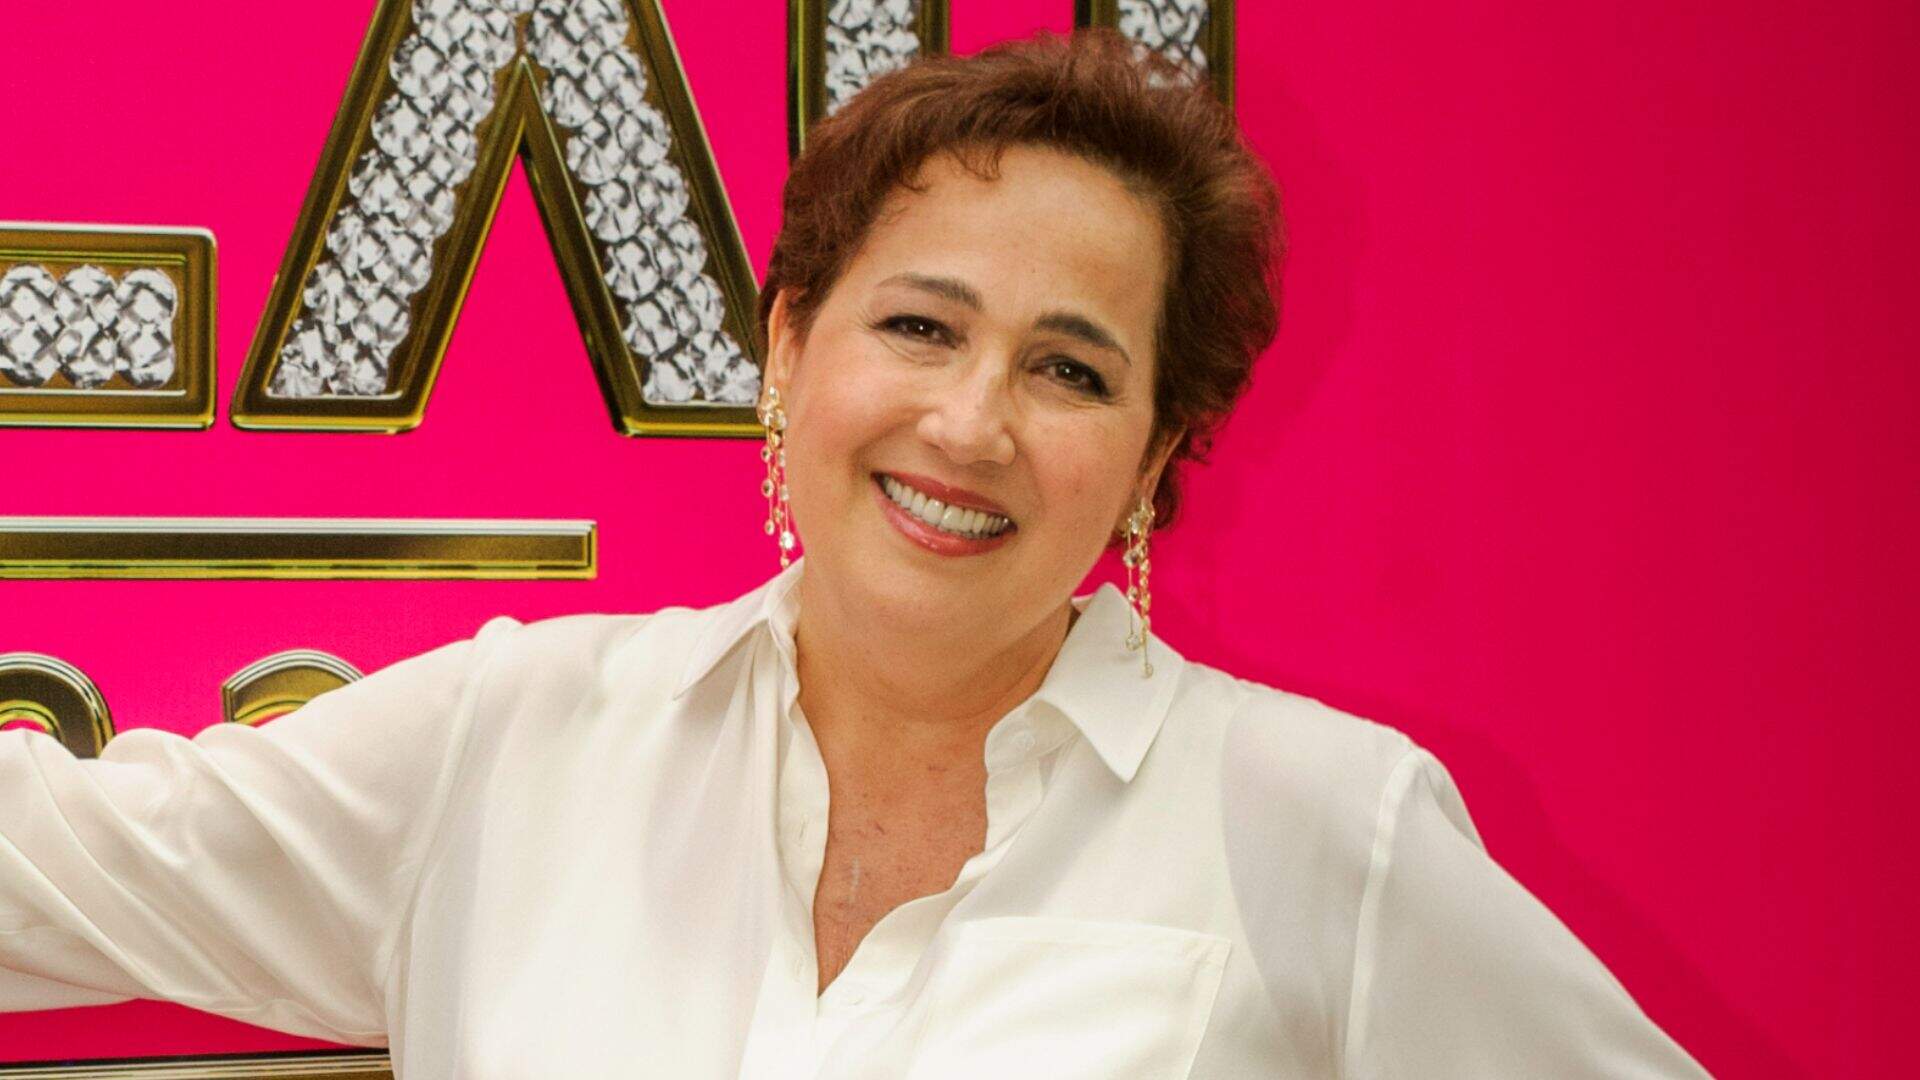 Cláudia Jimenez